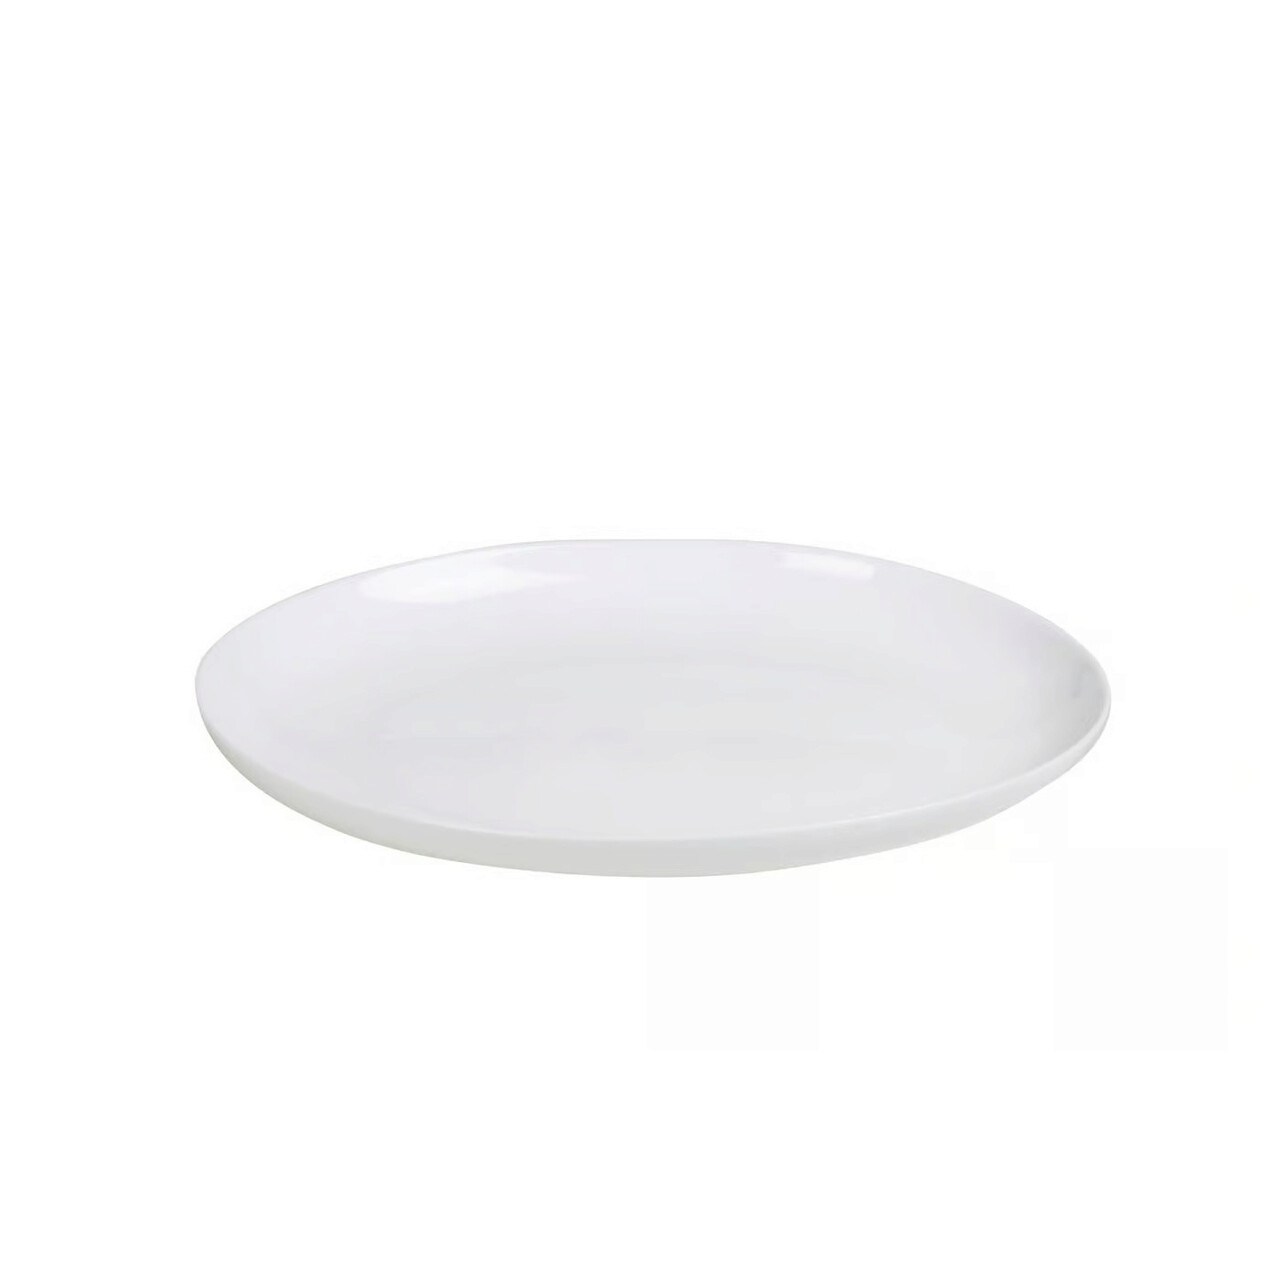 Platou oval pentru servire Basic, Ambition, 33x24x3.2 cm, opal, alb